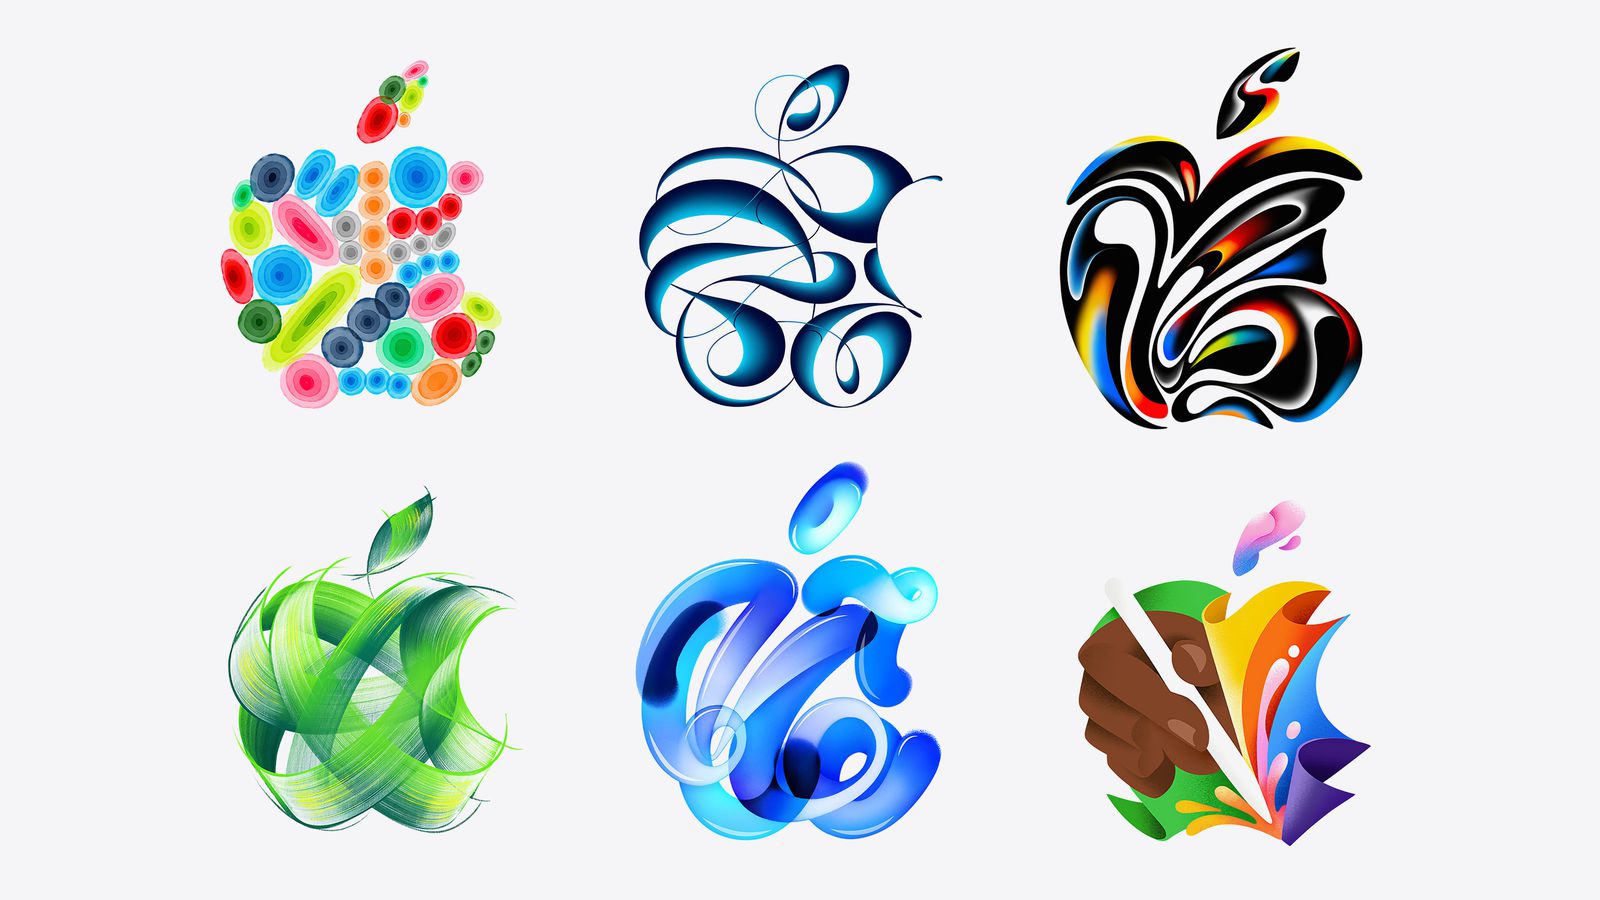 من iPhoneIslam.com، ستة تصميمات مجردة بألوان زاهية وأشكال انسيابية، بما في ذلك مجموعة من المجالات والأشكال الشبيهة بالشريط وزخارف أوراق الشجر المتأثرة بأخبار الهامش.